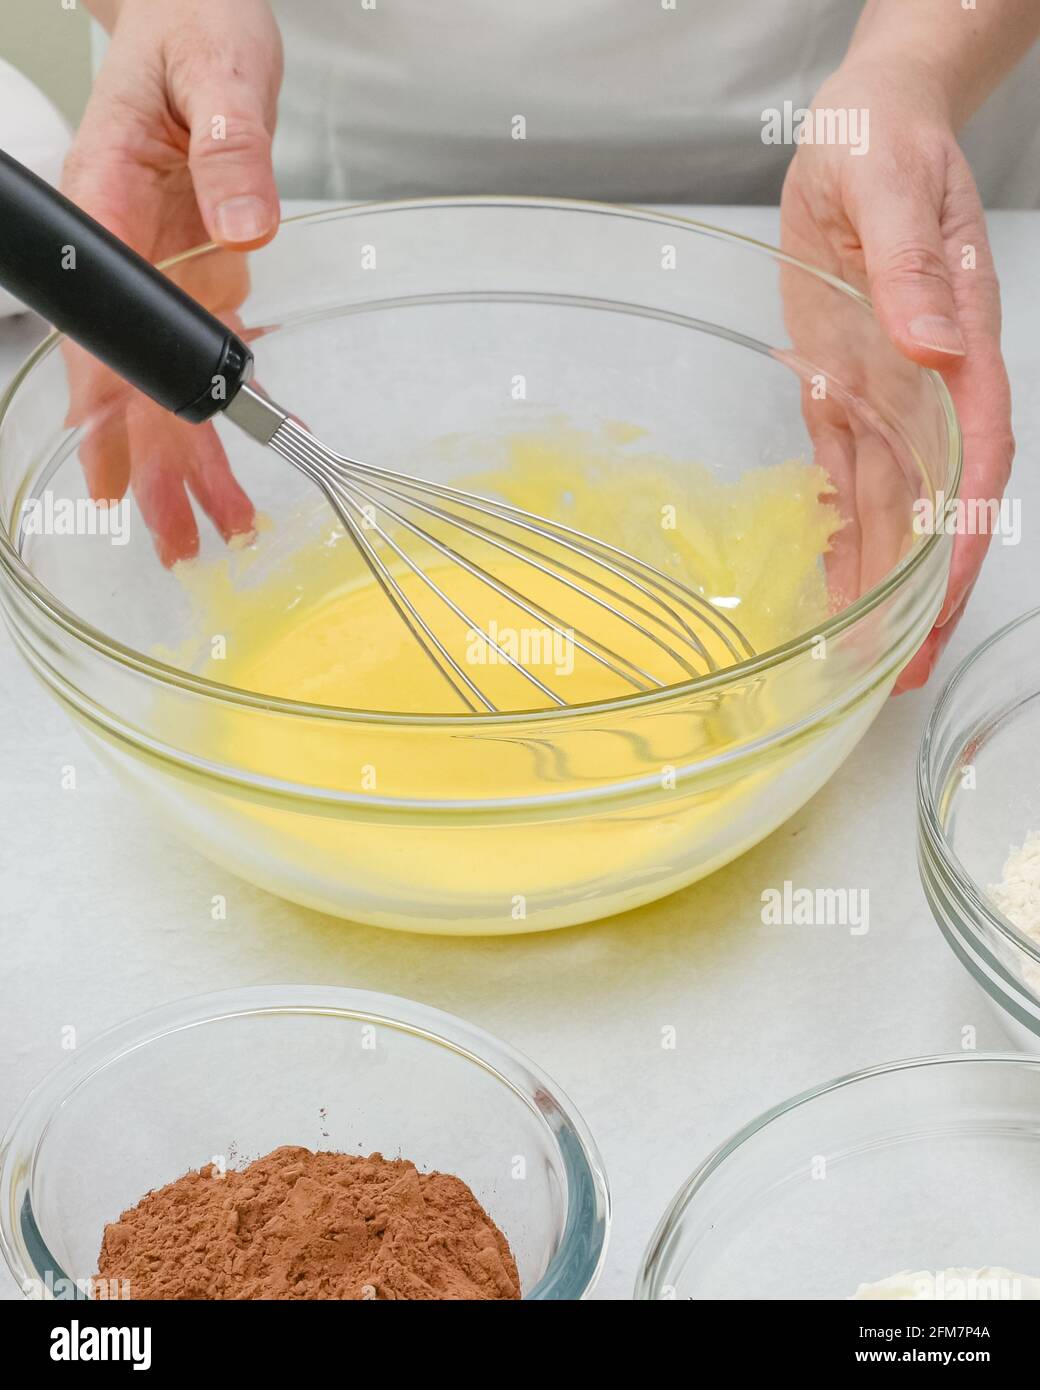 Bata las yemas de huevo con azúcar en un recipiente de cristal. Receta paso  a paso de pastel de chocolate, primer plano proceso de preparación, manos  de la mujer Fotografía de stock -